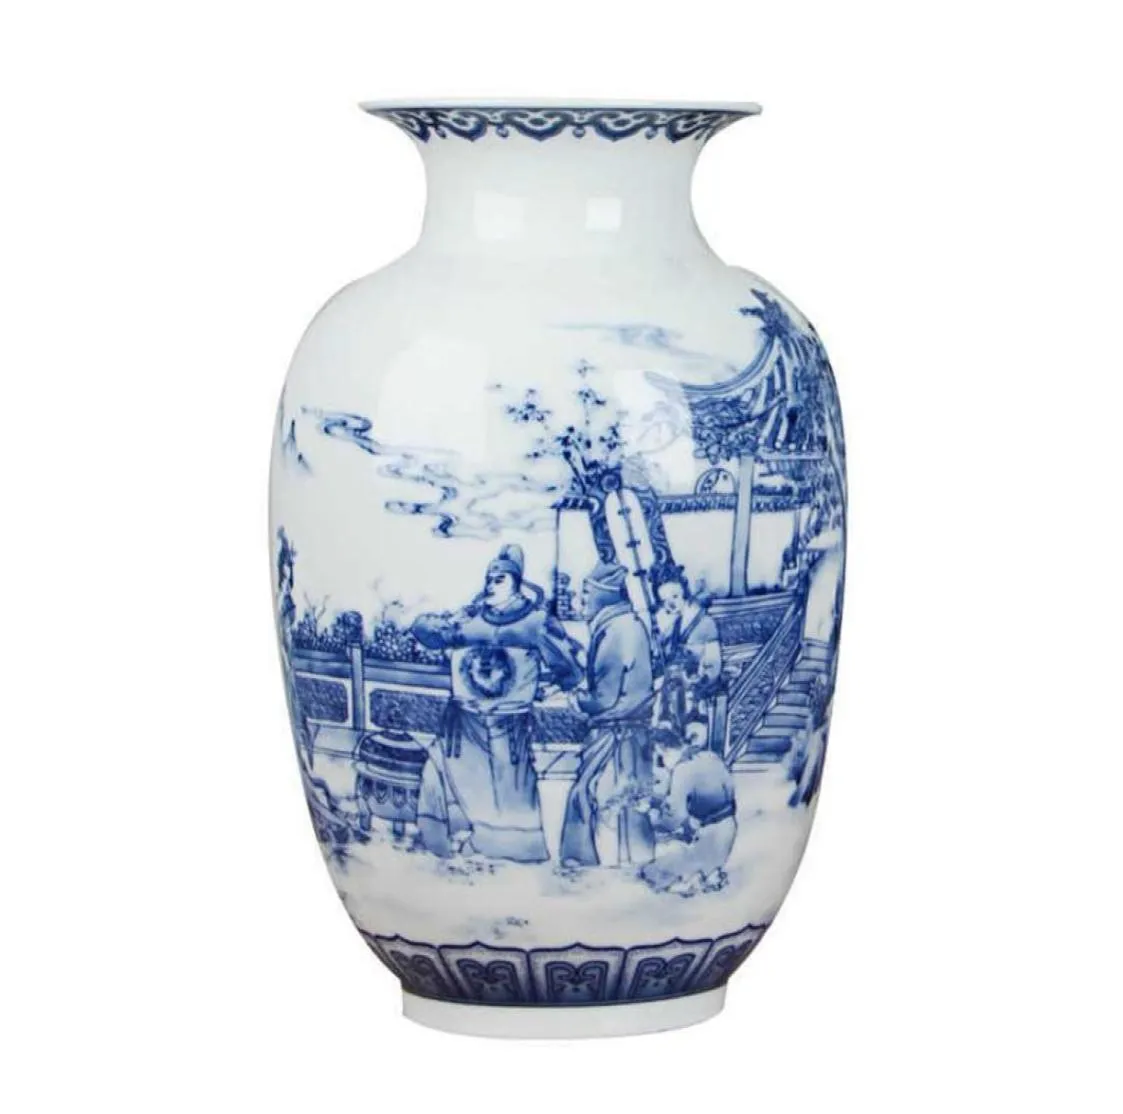 Florero chino clásico de cerámica azul y blanco, florero antiguo de porcelana de mesa para decoración del comedor 210623232U6259954